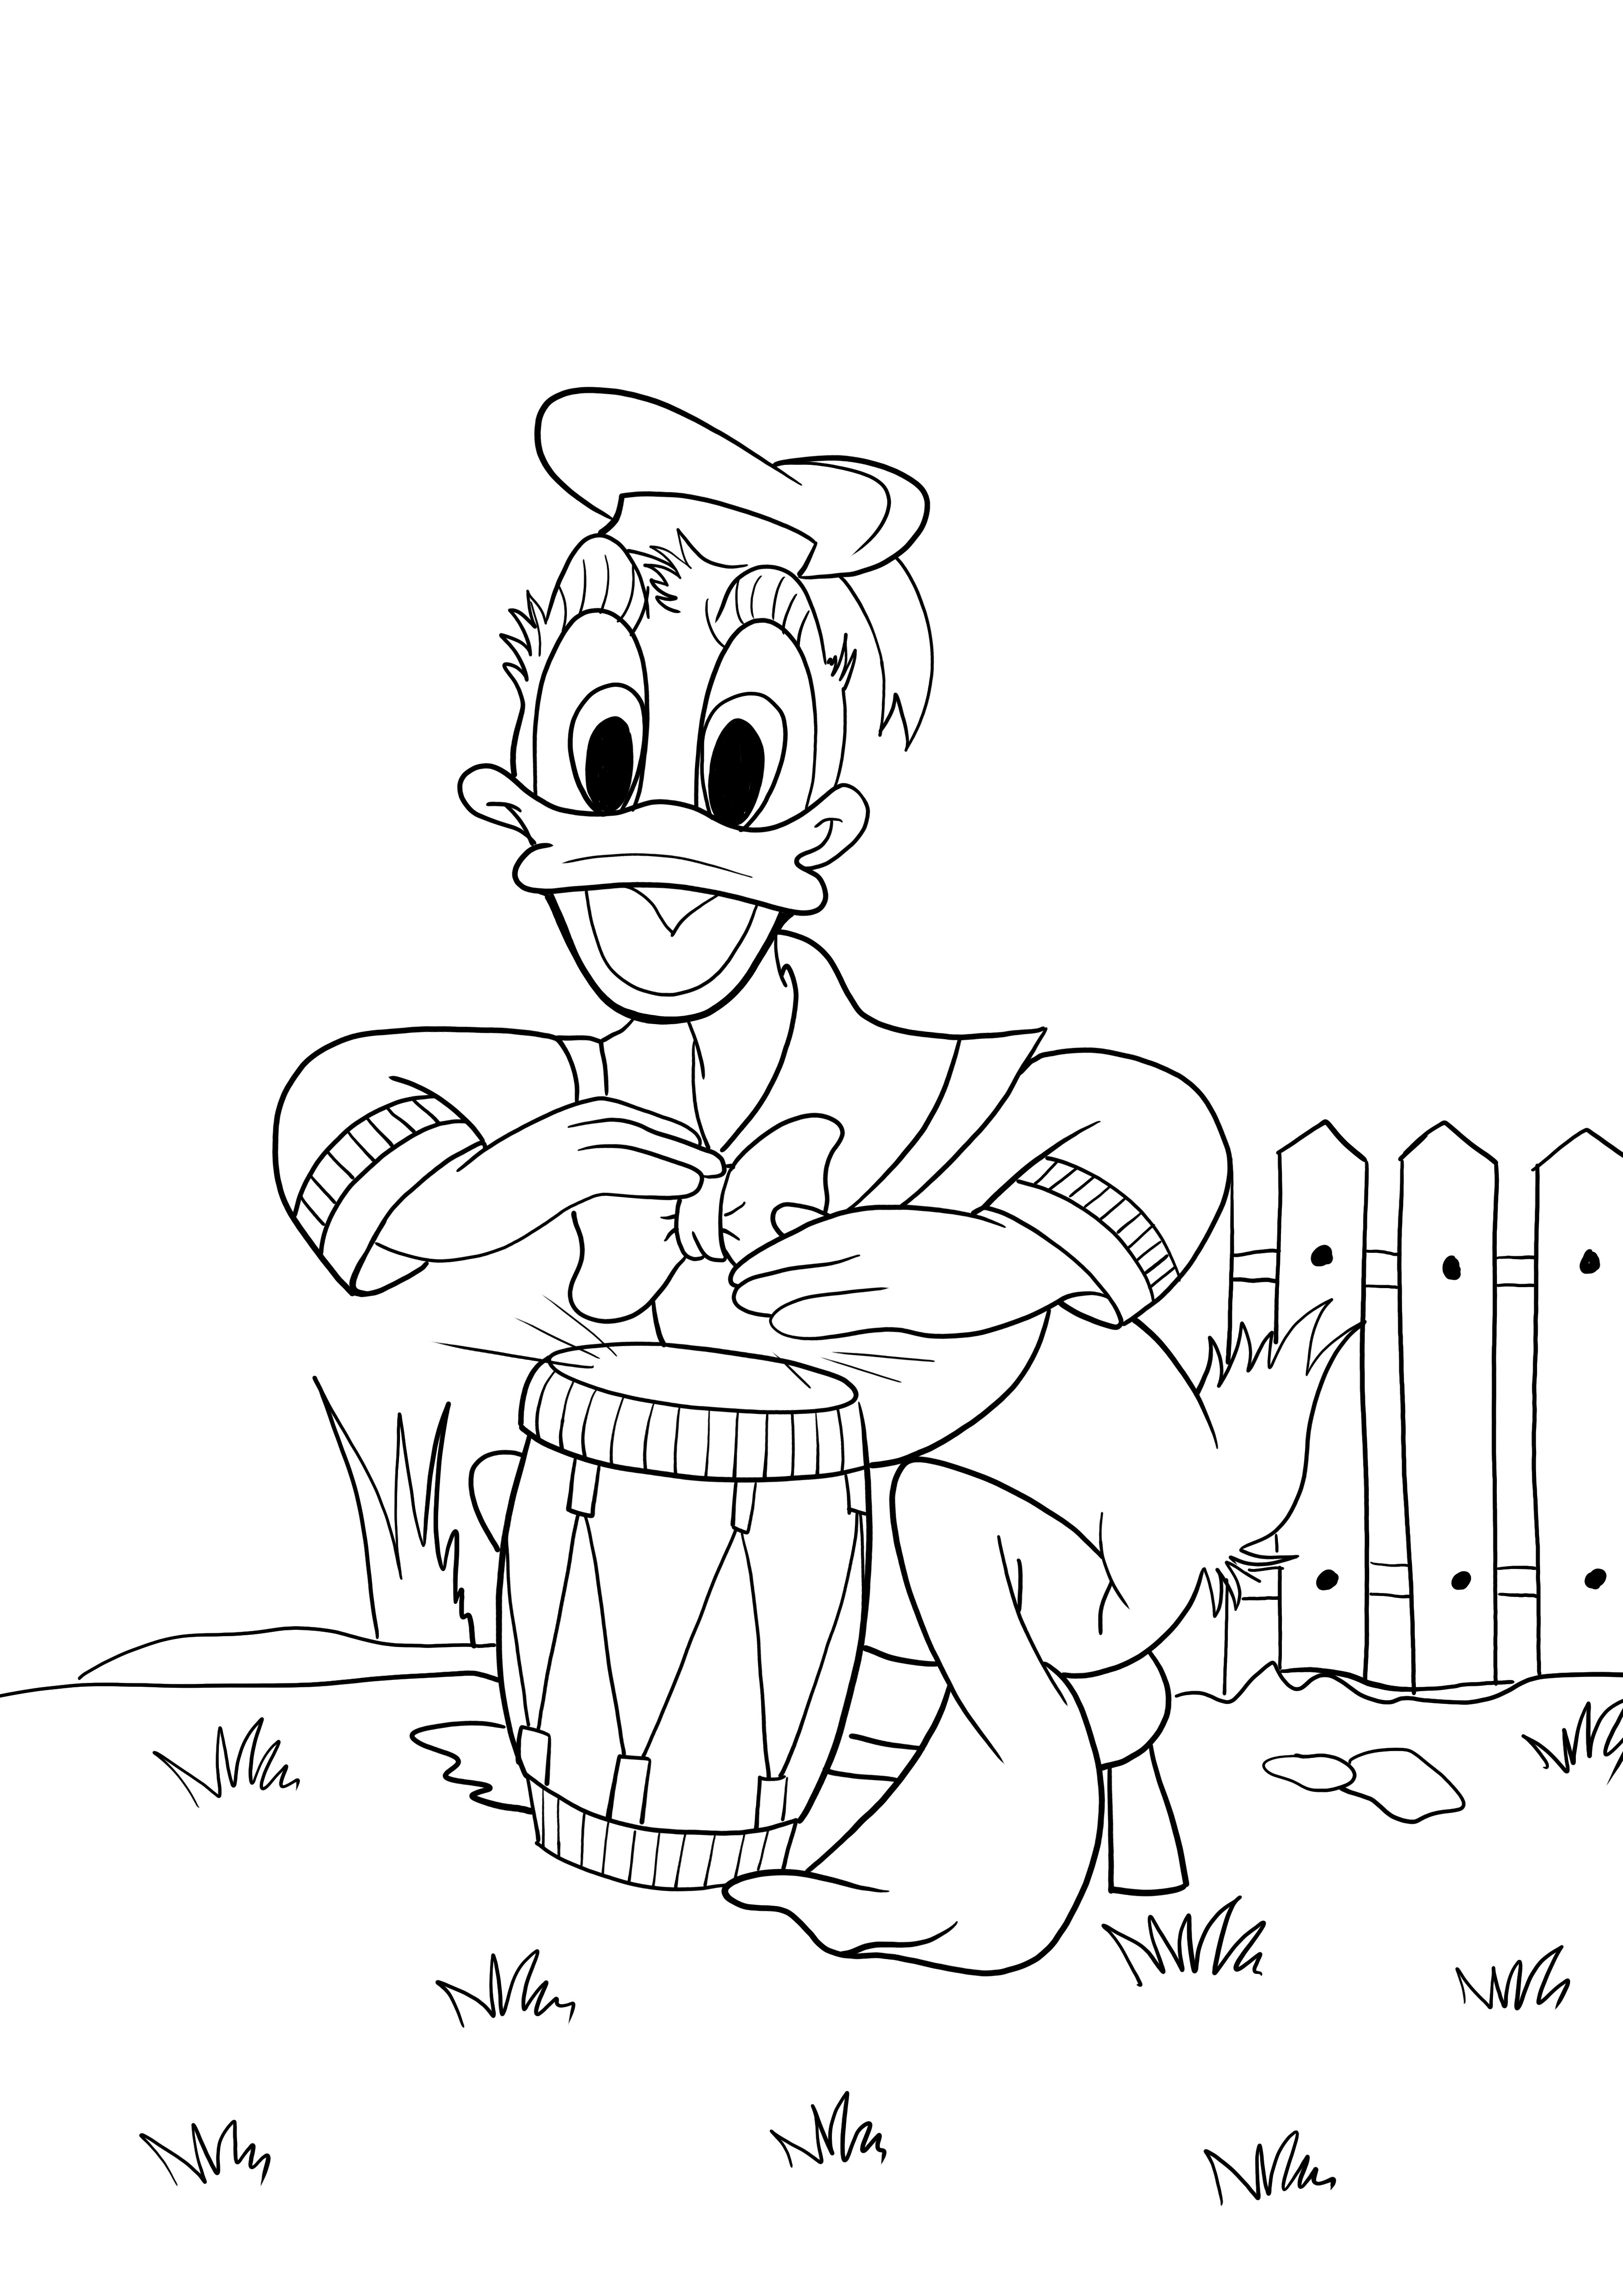 Donald grający na perkusji arkusz do kolorowania i drukowania za darmo